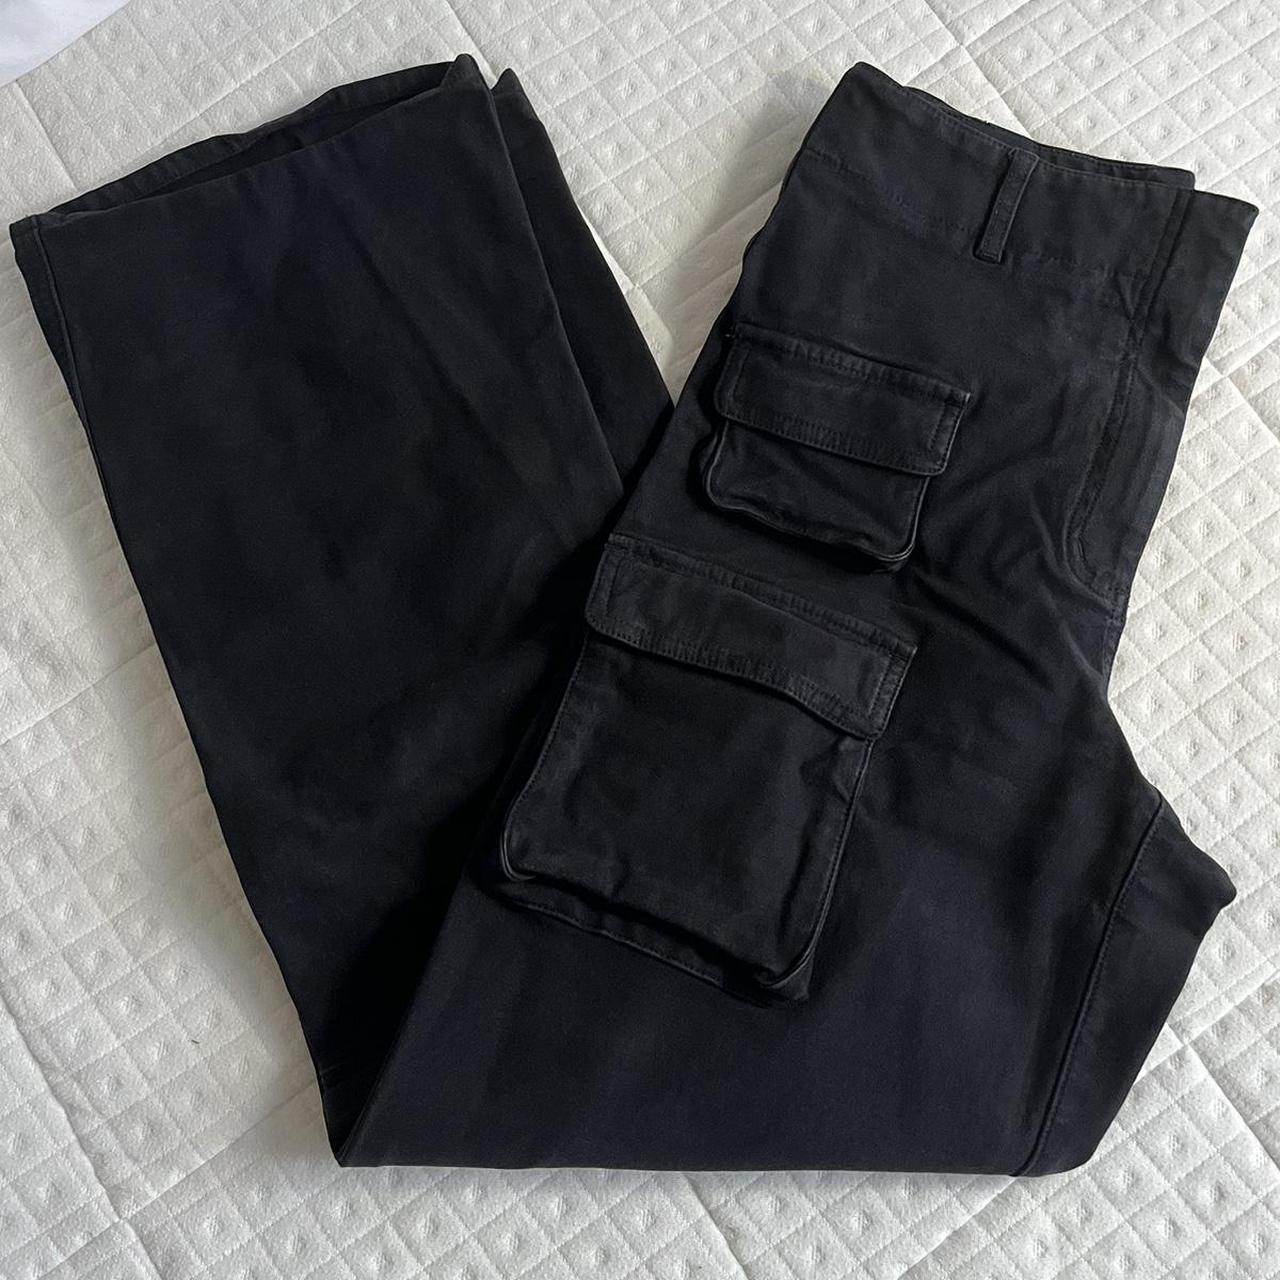 Aritzia Picture pant cargo pants - Retail for $128 - Depop